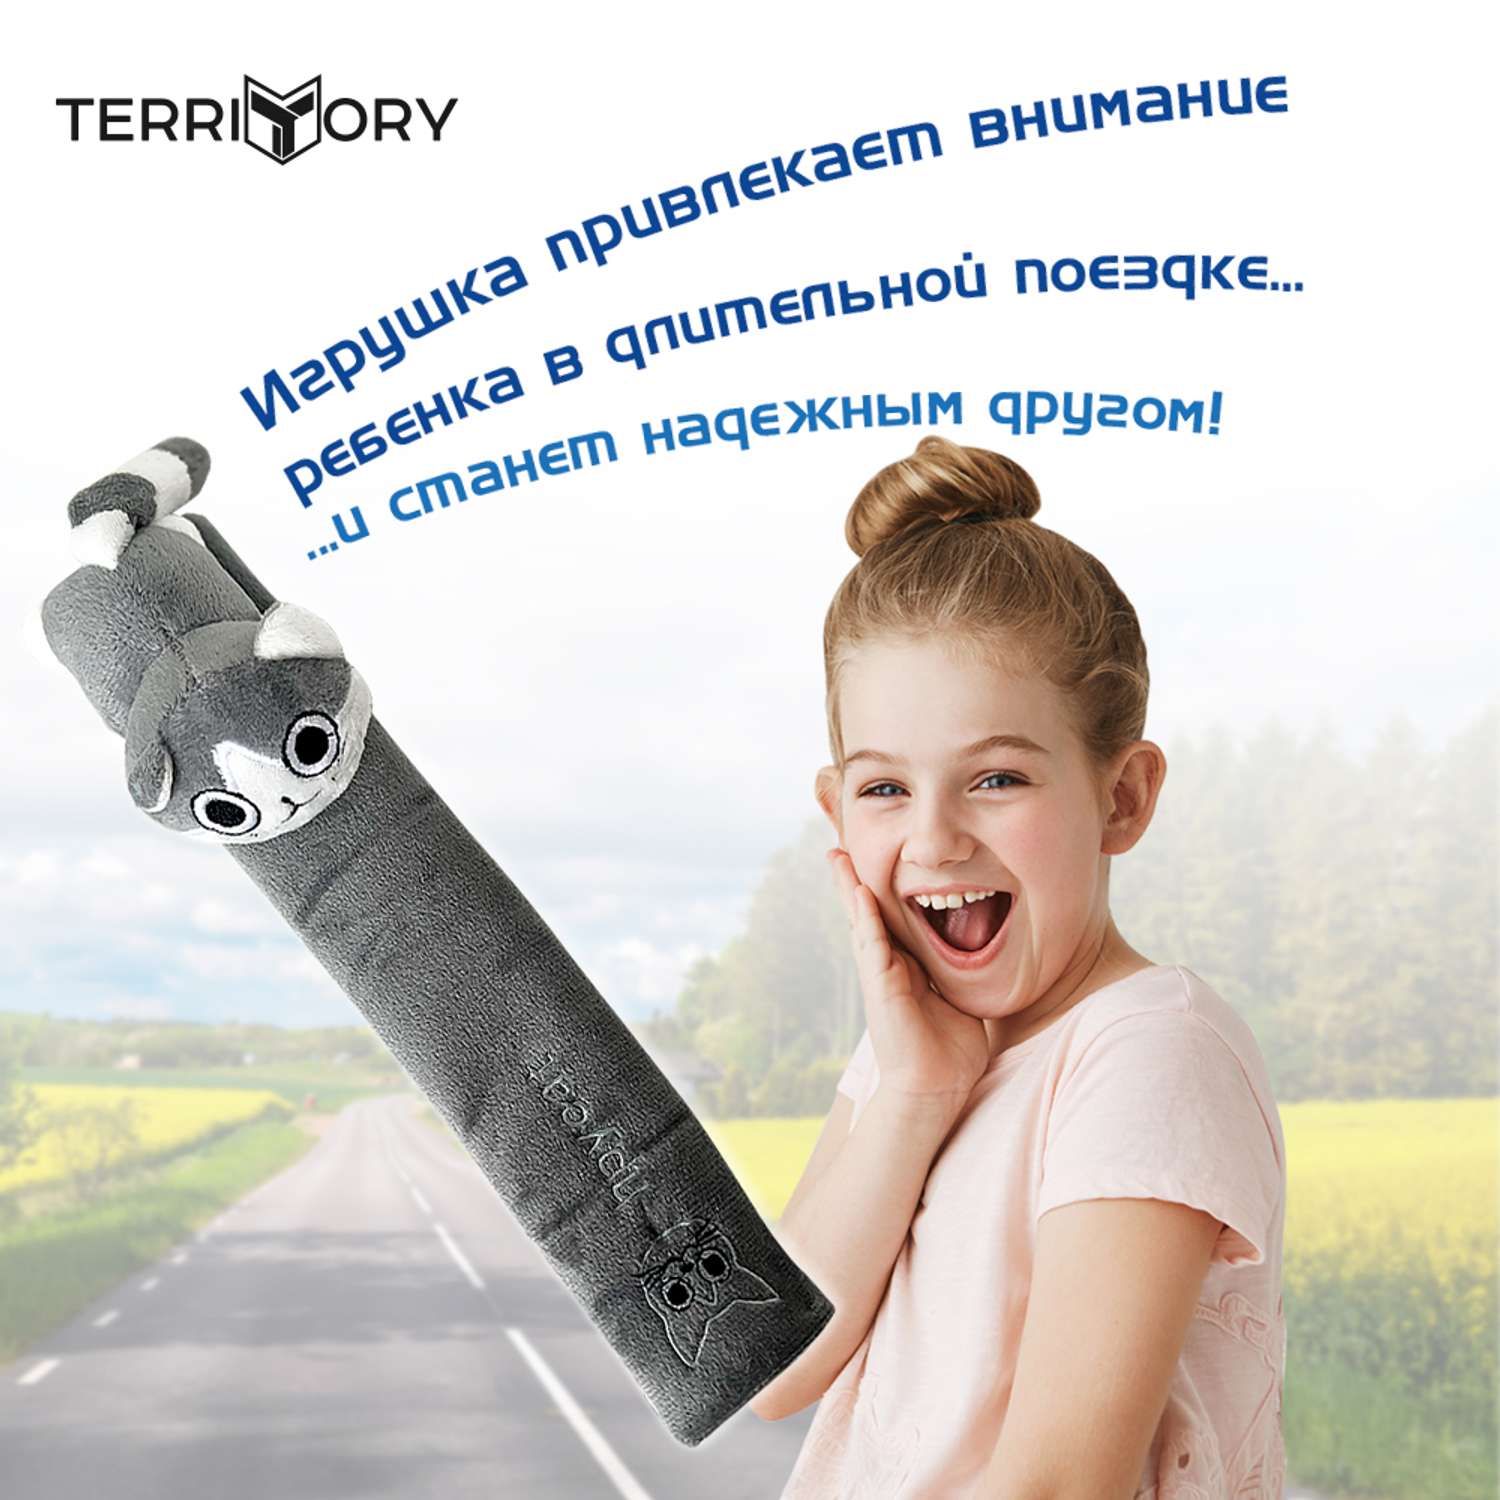 Накладка на ремень Territory безопасности детская с мягкой игрушкой серый котик - фото 5